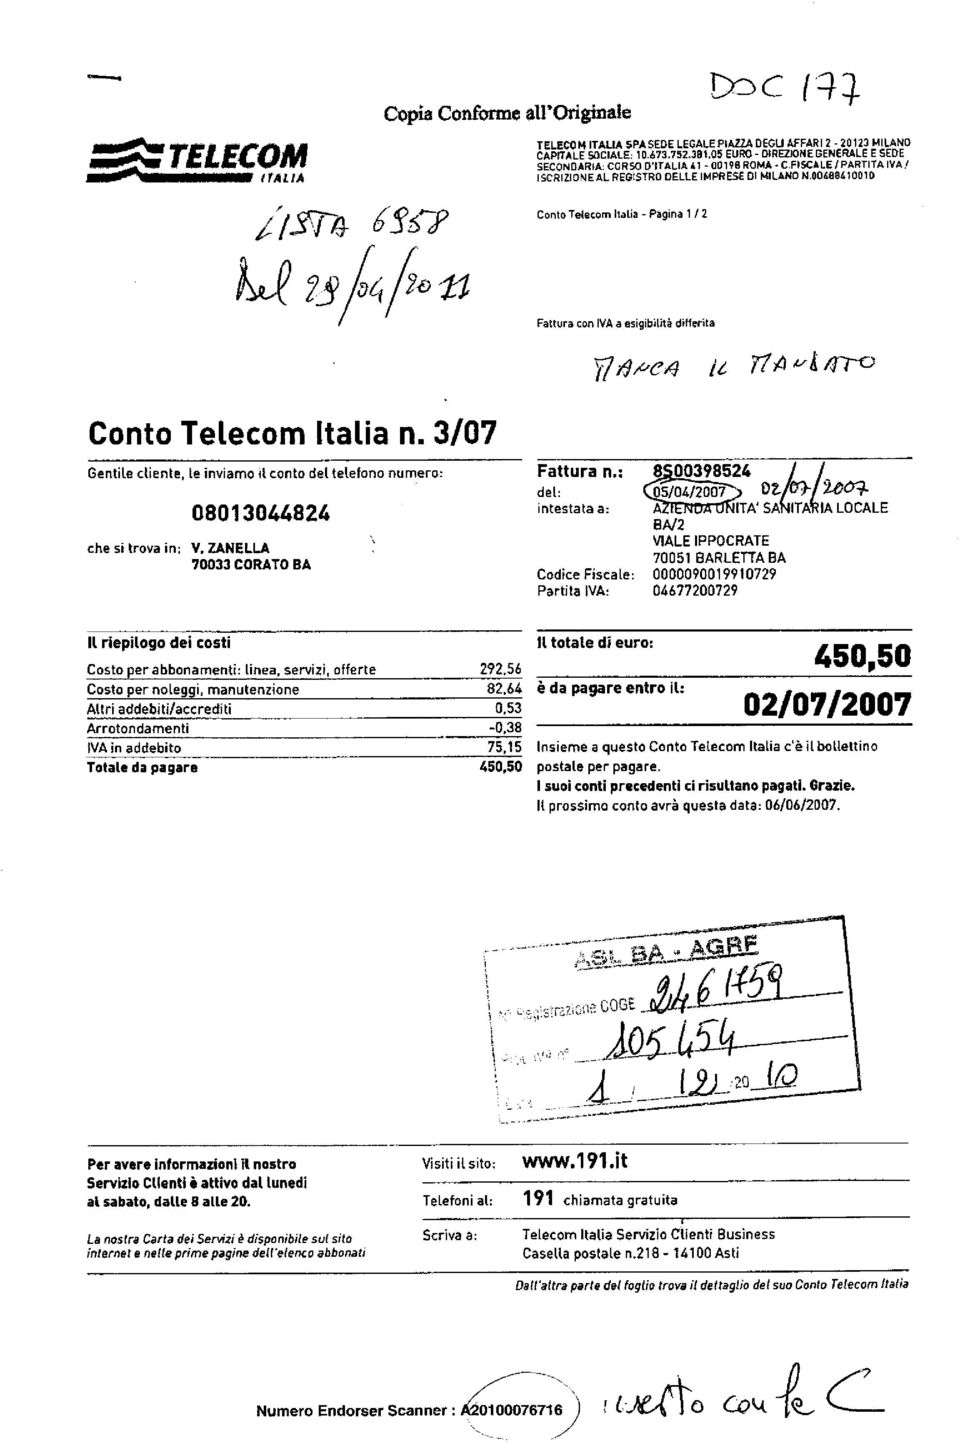 00488410010 Conto Telecom Italia - Pagina 1 / 2 Fattura con IVA a esigibilità differita 7" 7 4fre4 / 77A /Tre Conto Telecom Italia n.